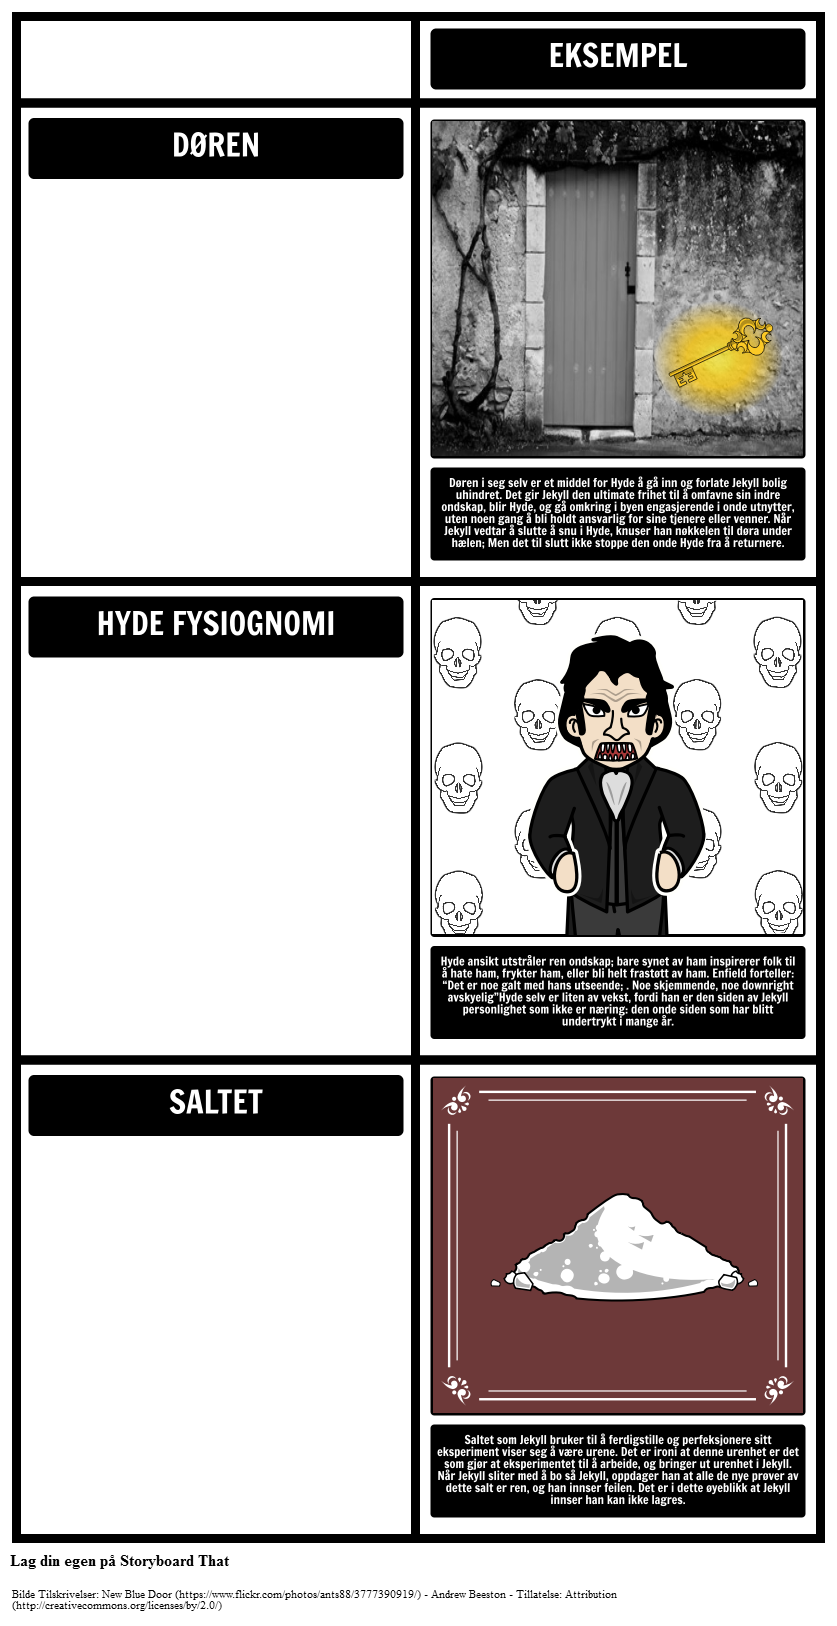 Dr. Jekyll og Mr. Hyde Temaer, Motiver og Symboler